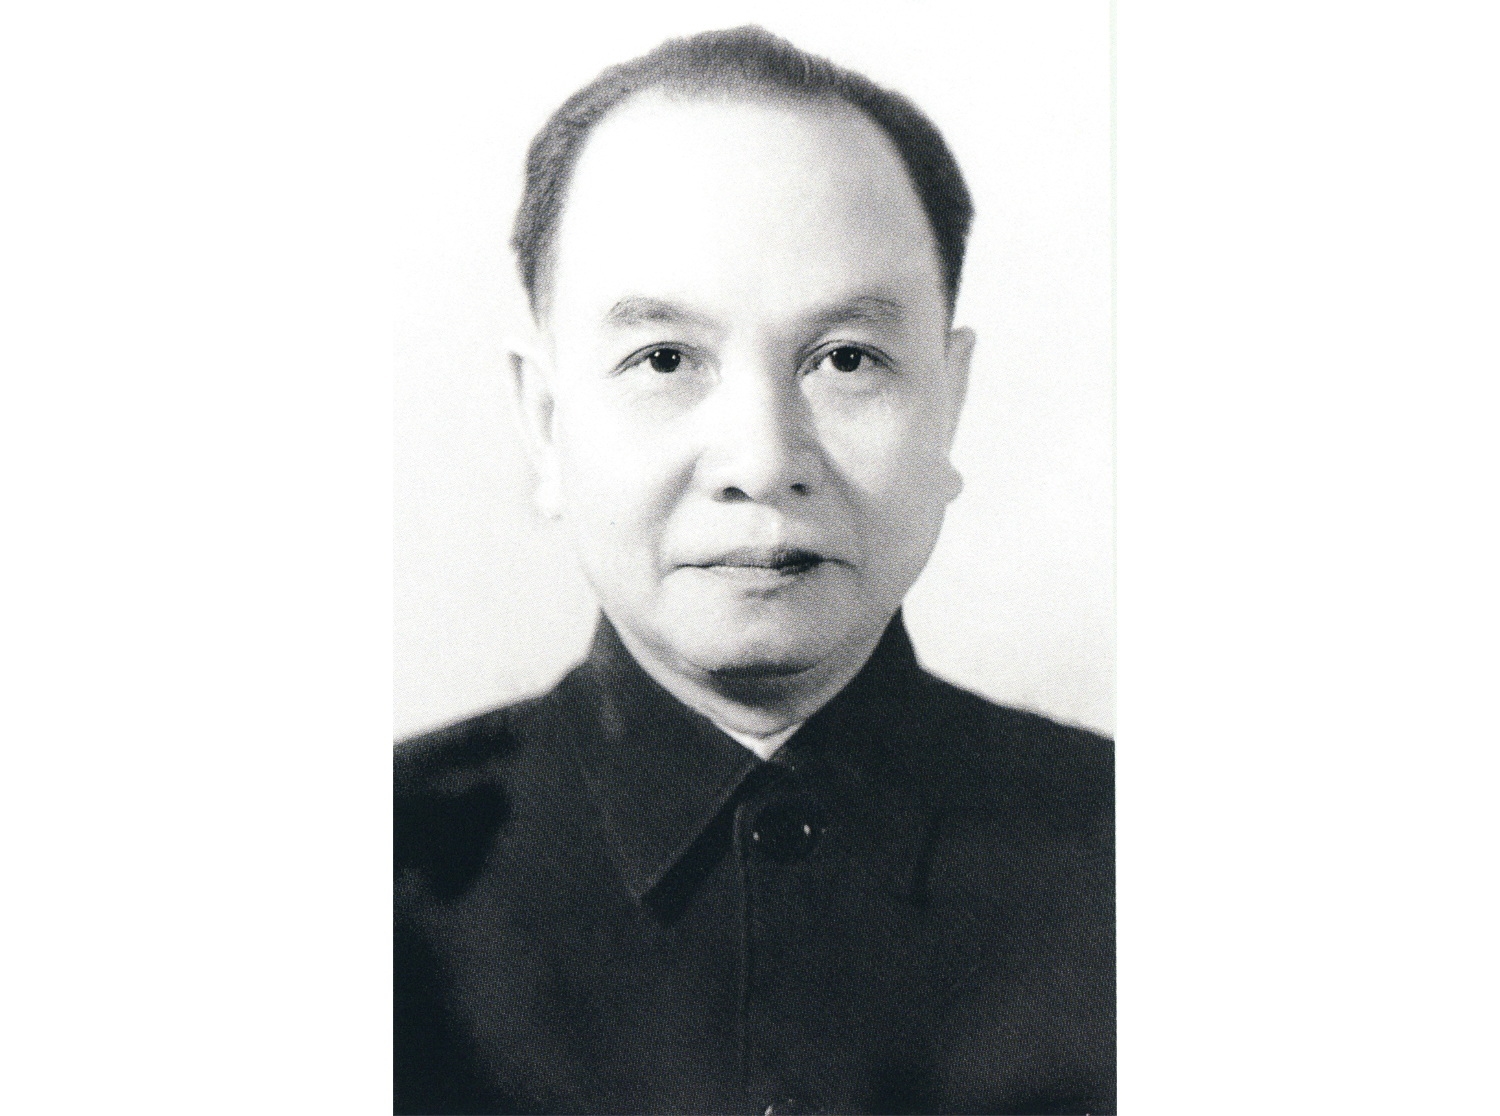 Tổng Bí thư Trường Chinh – Nhà lãnh đạo kiệt xuất, một nhân cách lớn của Cách mạng Việt Nam (phần I)